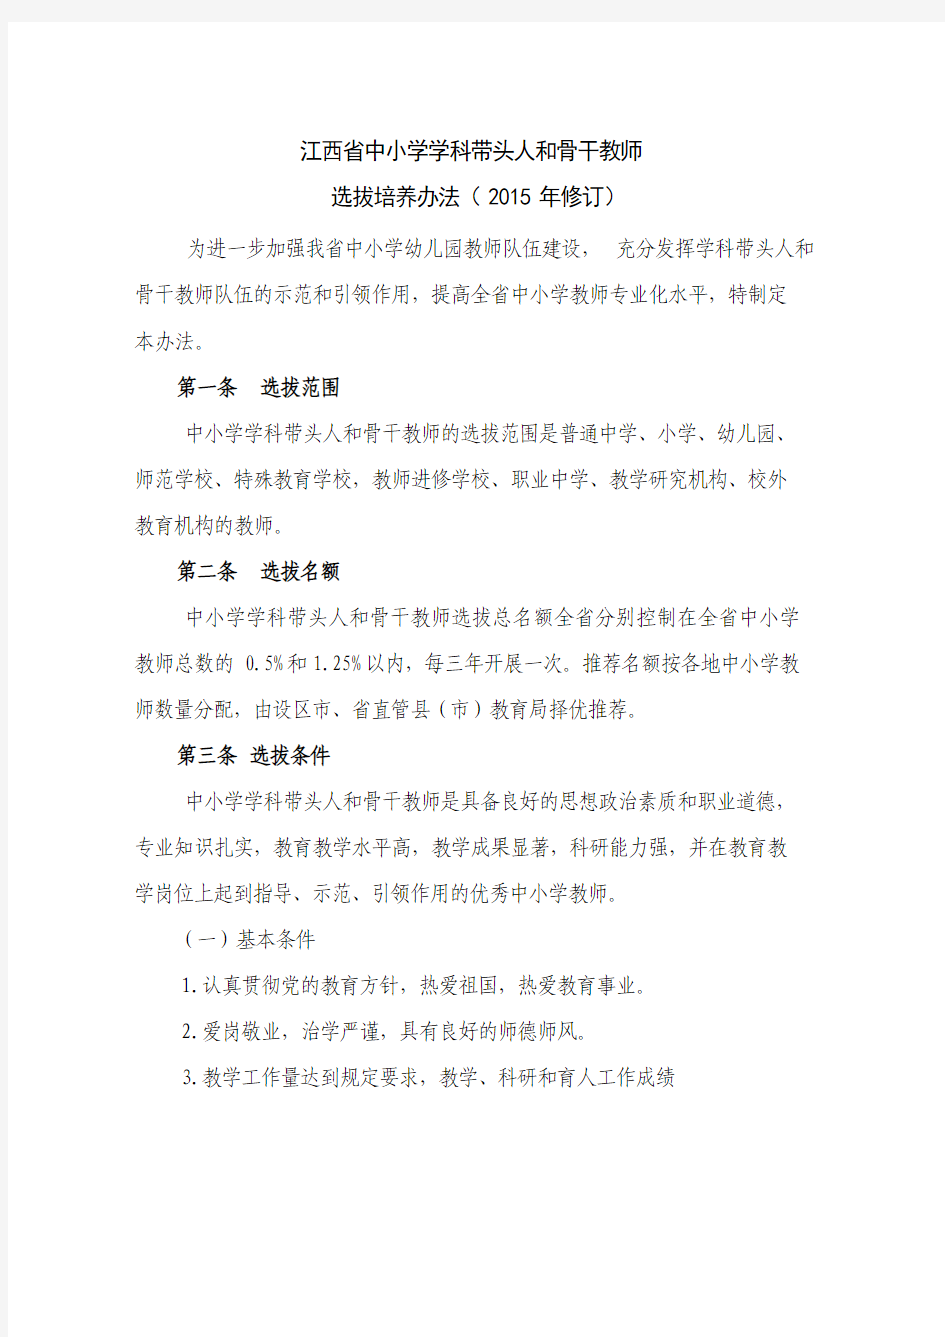 江西省第二批中小学学科带头人和骨干教师评选